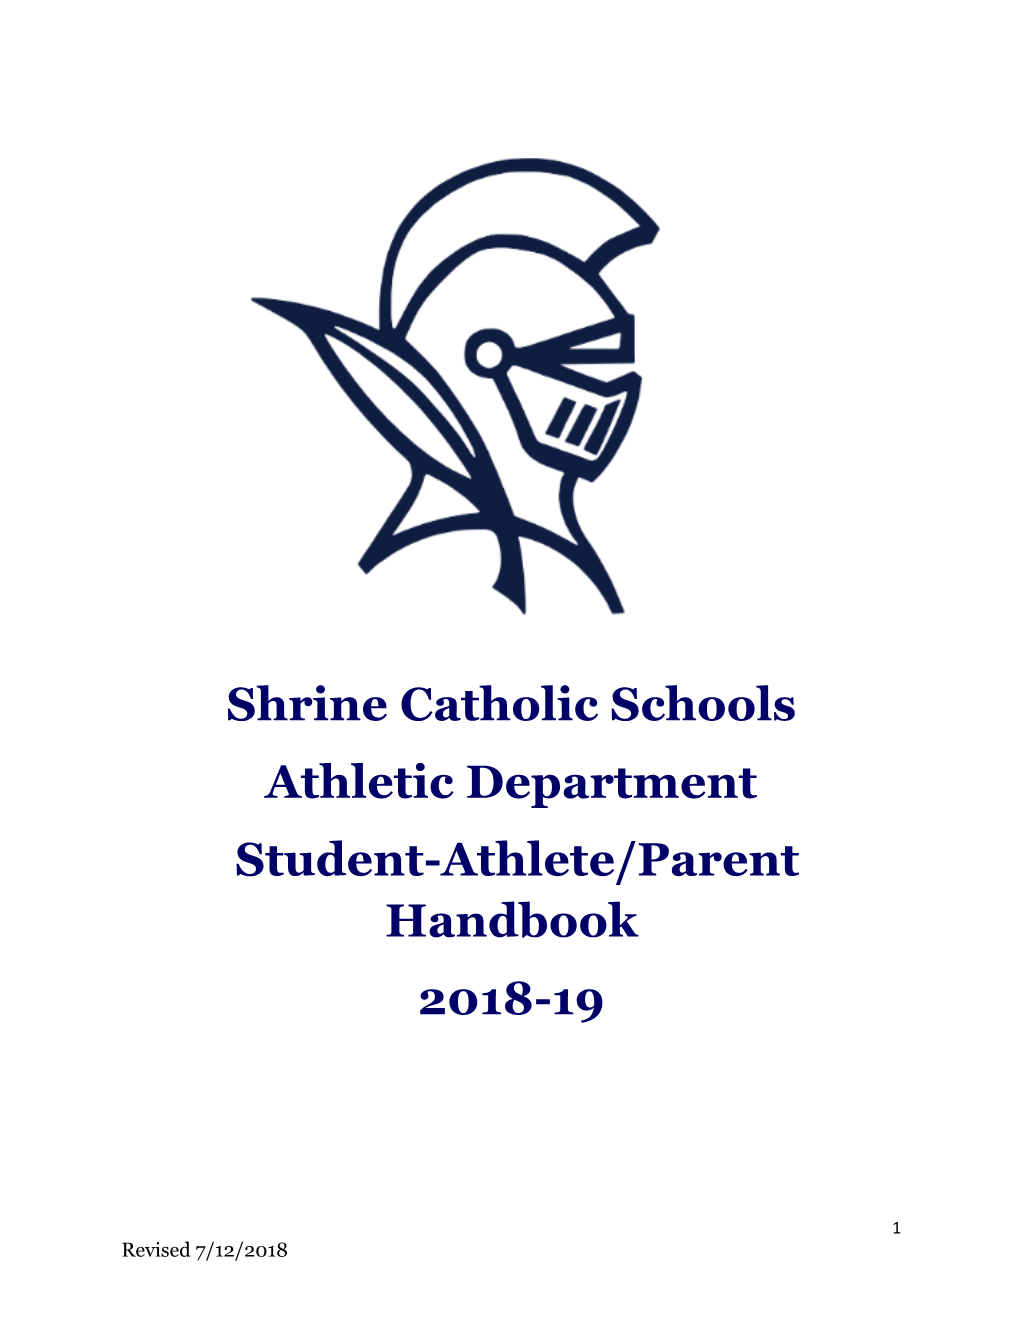 Shrine Catholic Schools Athletic Department Student-Athlete/Parent Handbook 2018-19